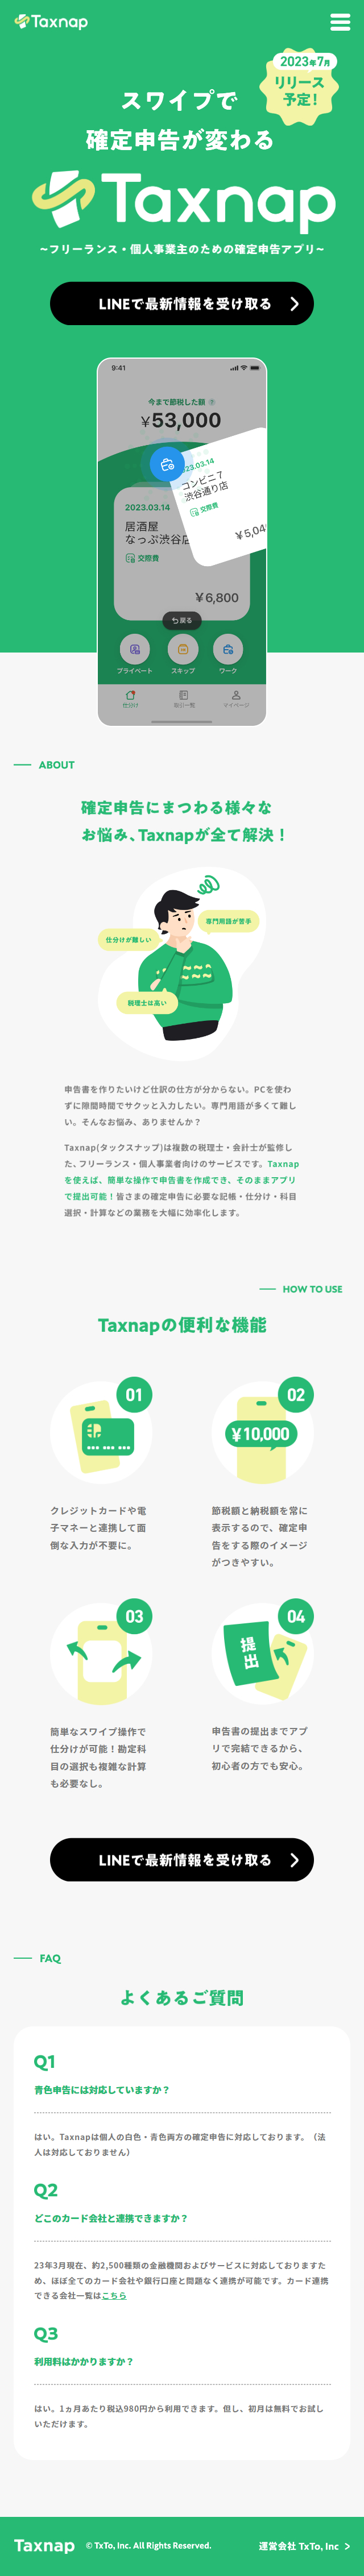 Taxnap_sp_1